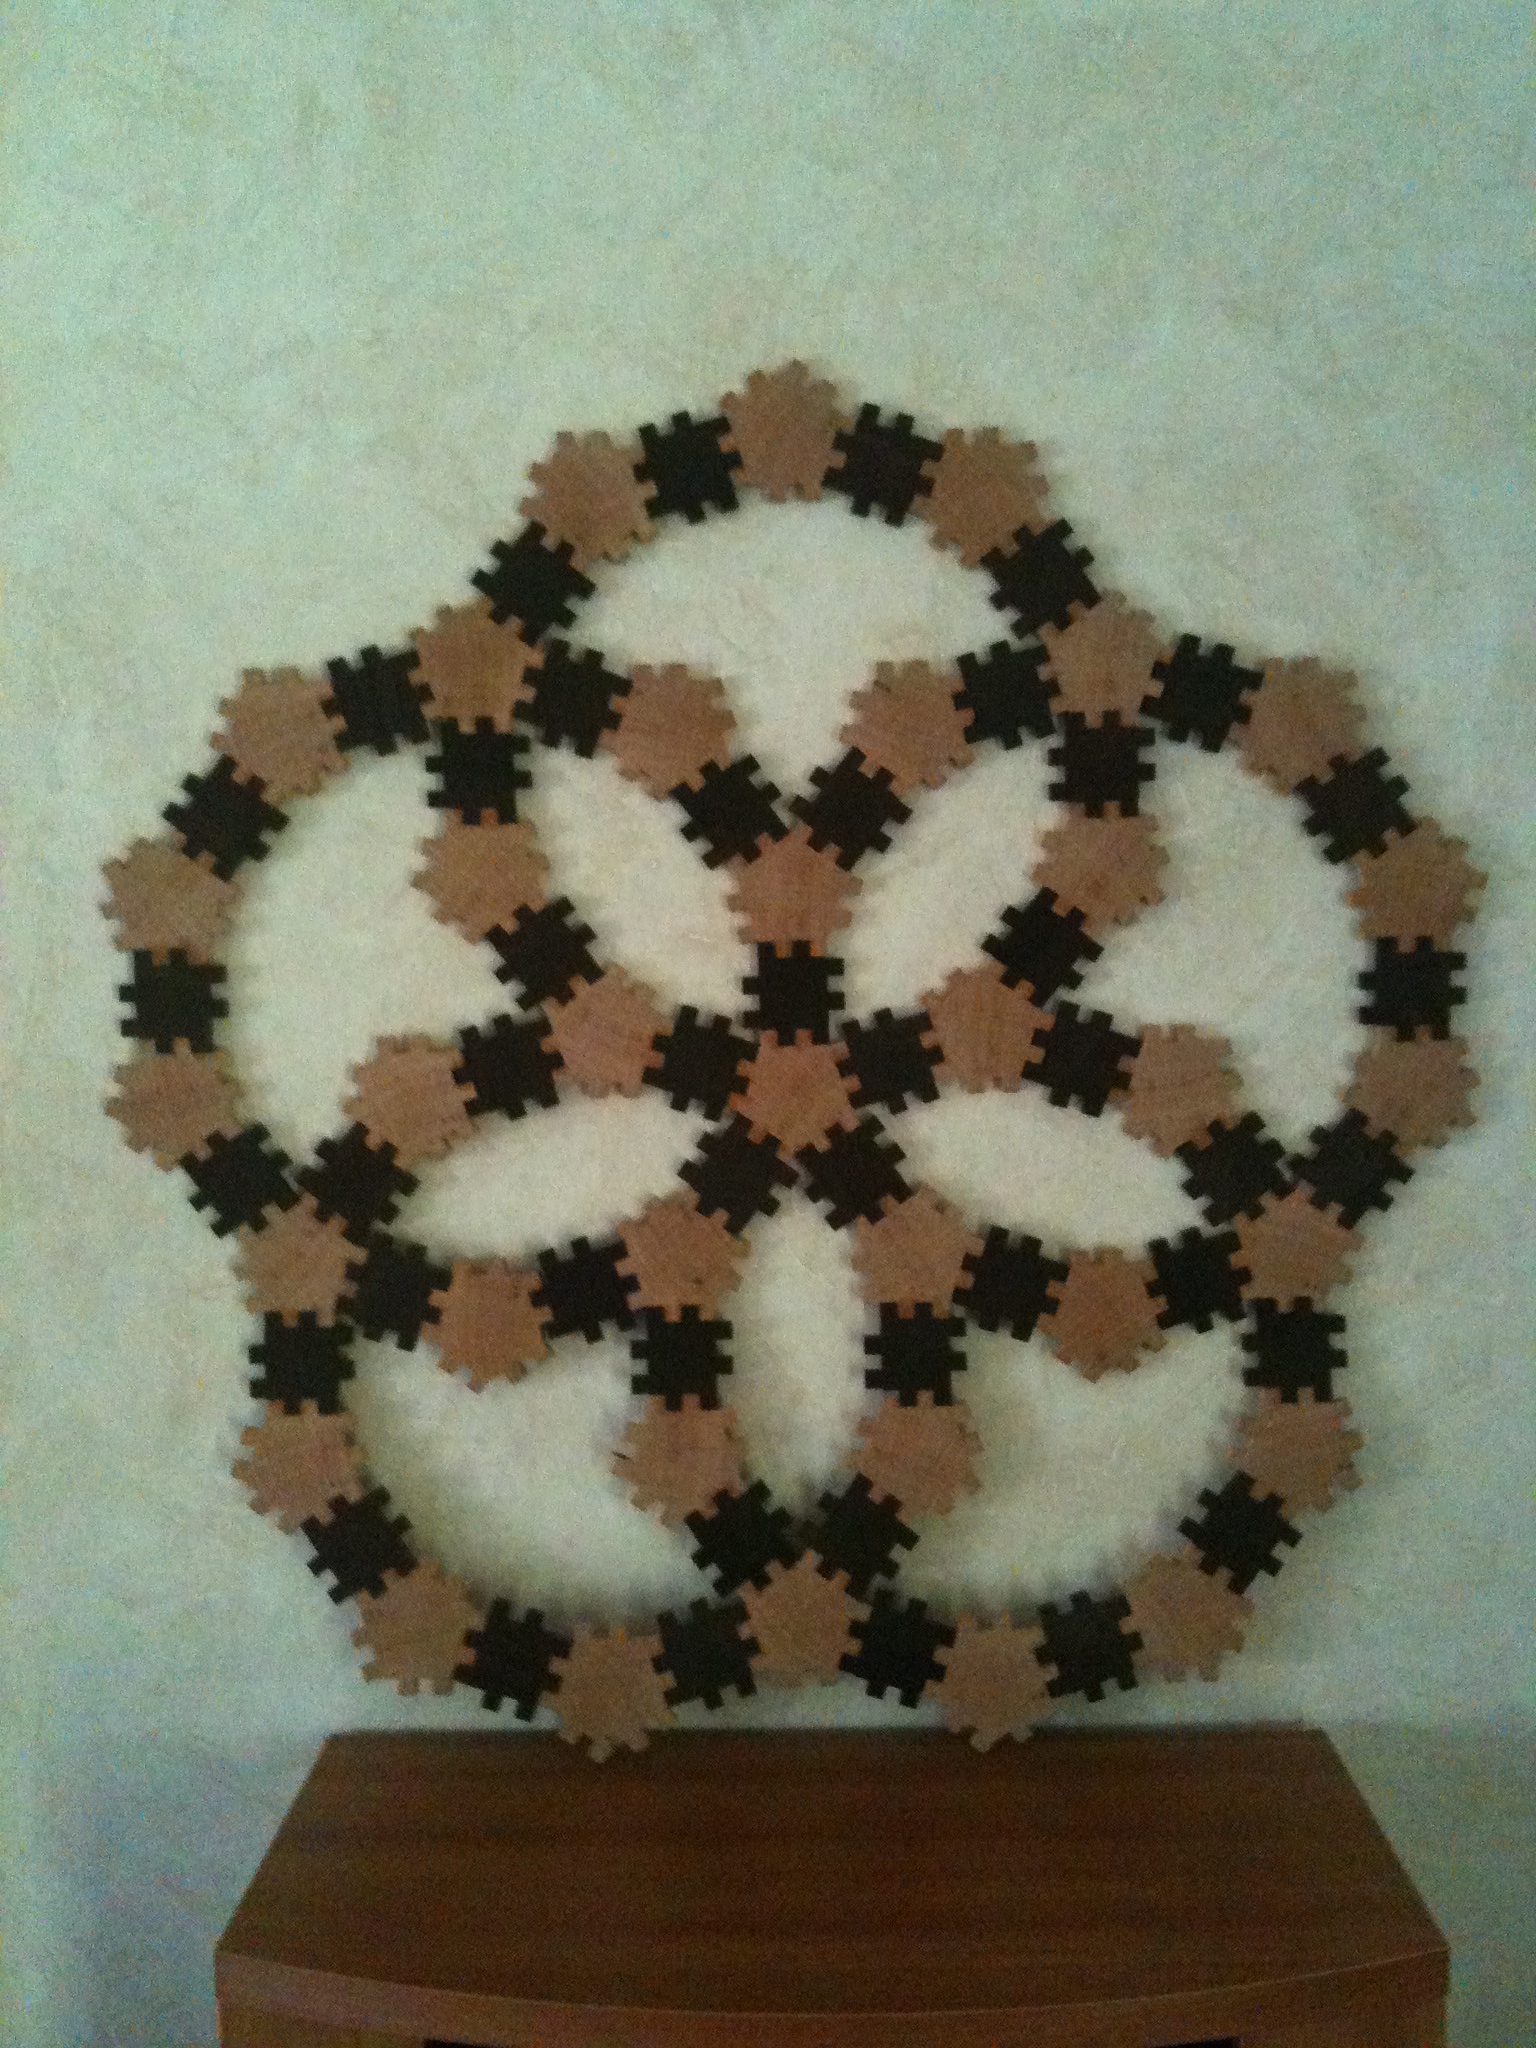 tiles/5foldsymetry.JPG